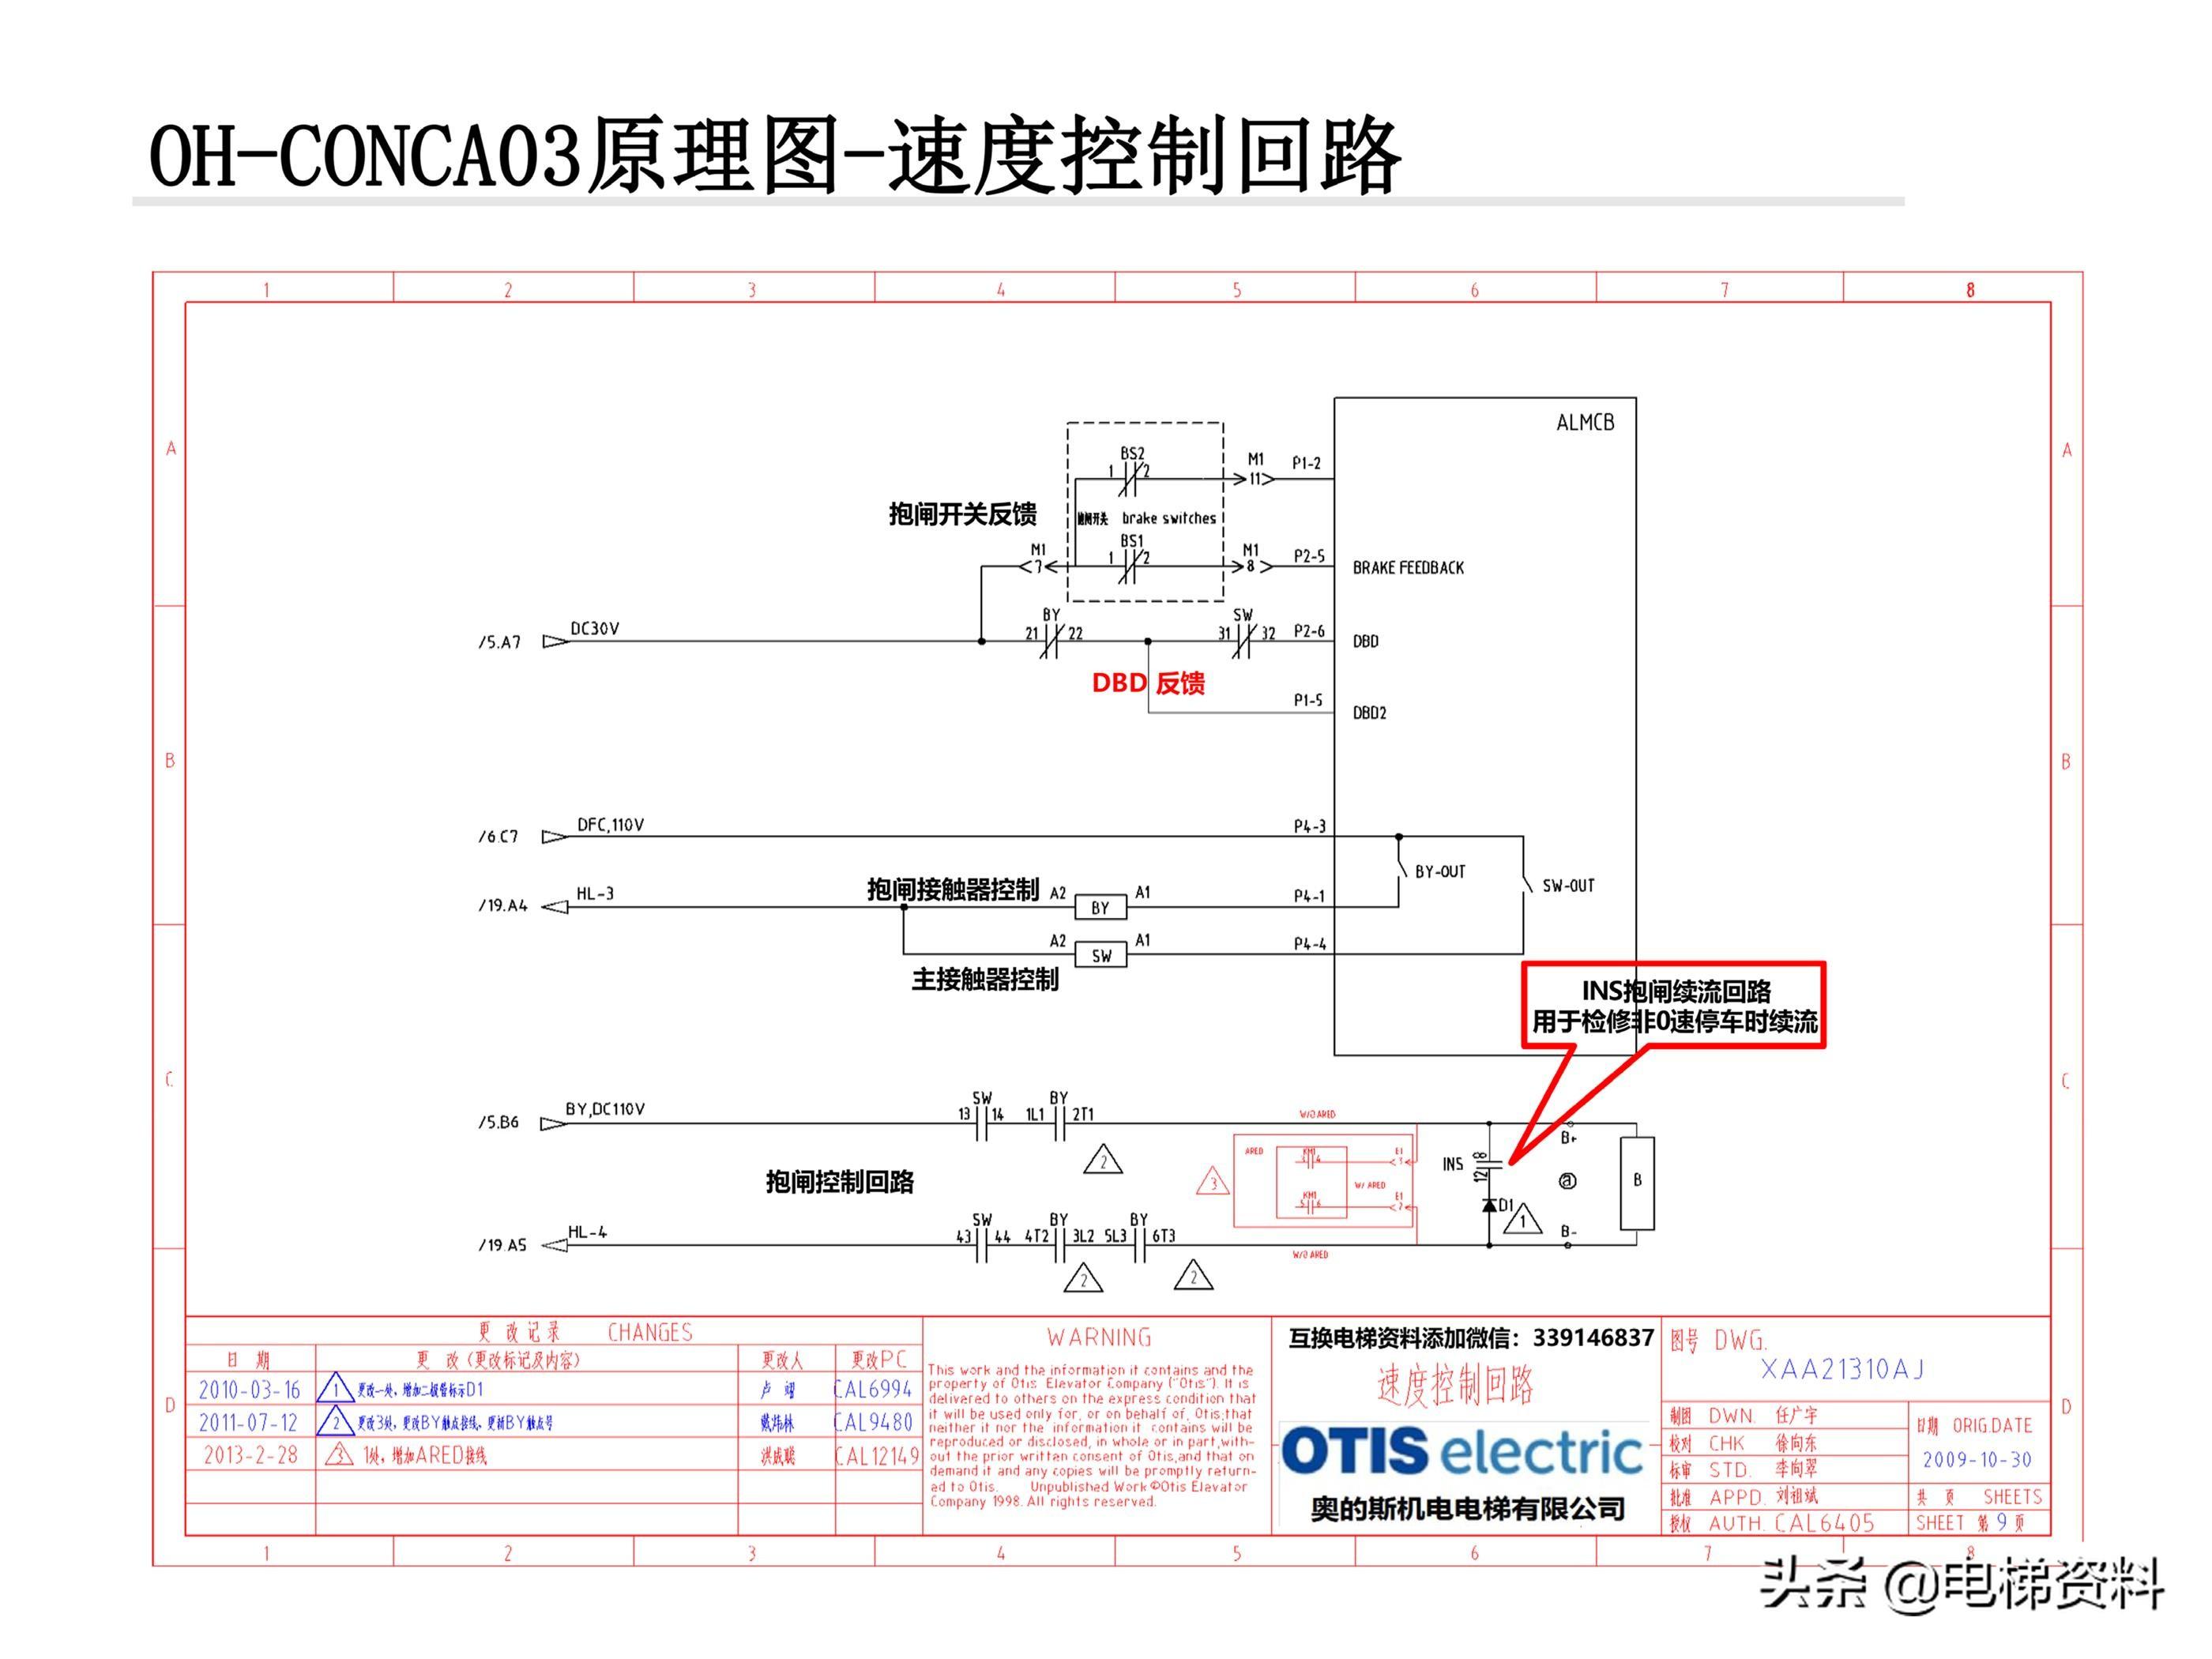 奥的斯电梯OH-CONCA03原理图讲解-XAA21310AJ